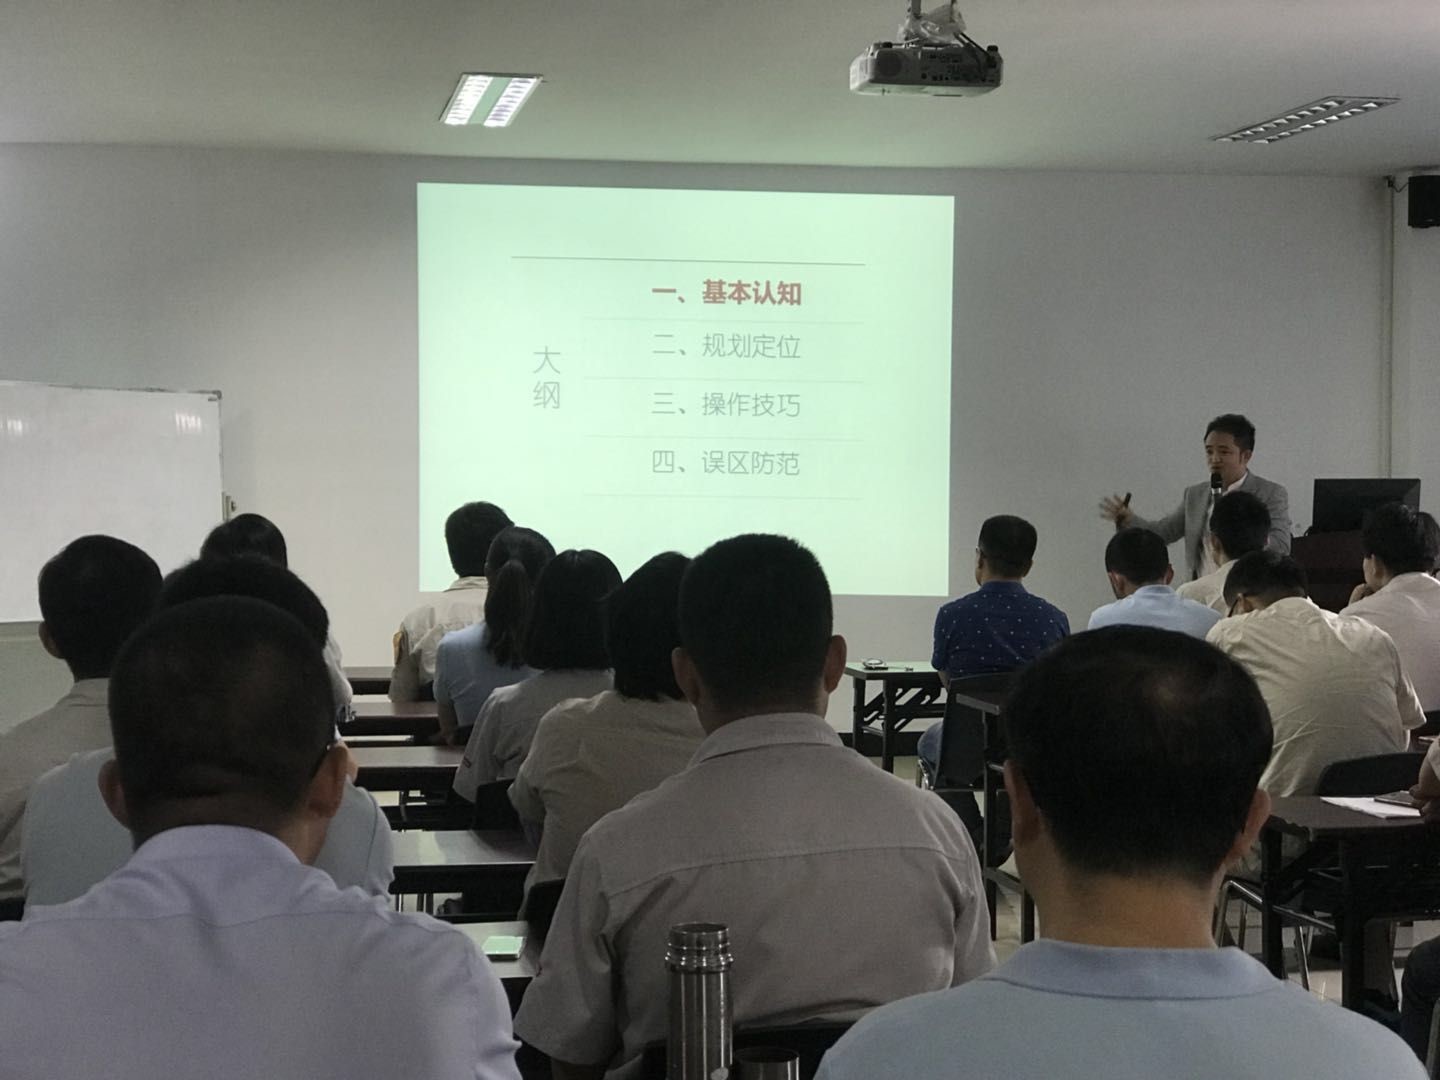 广州万宝集团压缩机有限公司人力资源咨询项目正式启动